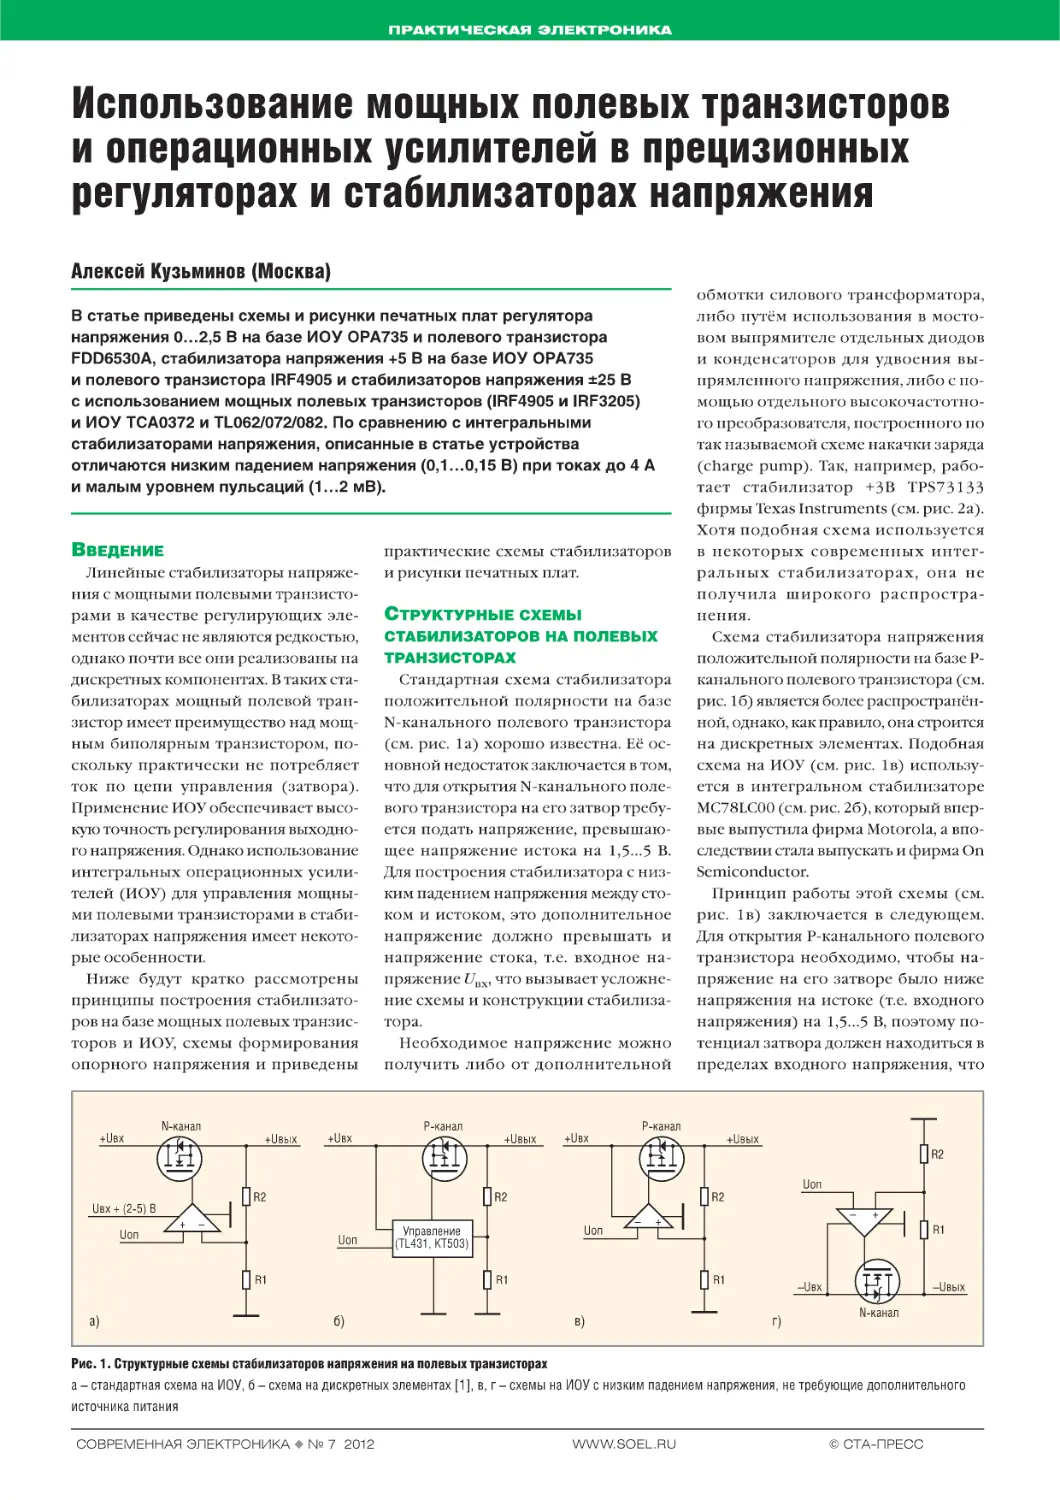 Использование мощных полевых транзисторов и операционных усилителей в прецизионных регуляторах и стабилизаторах напряжения